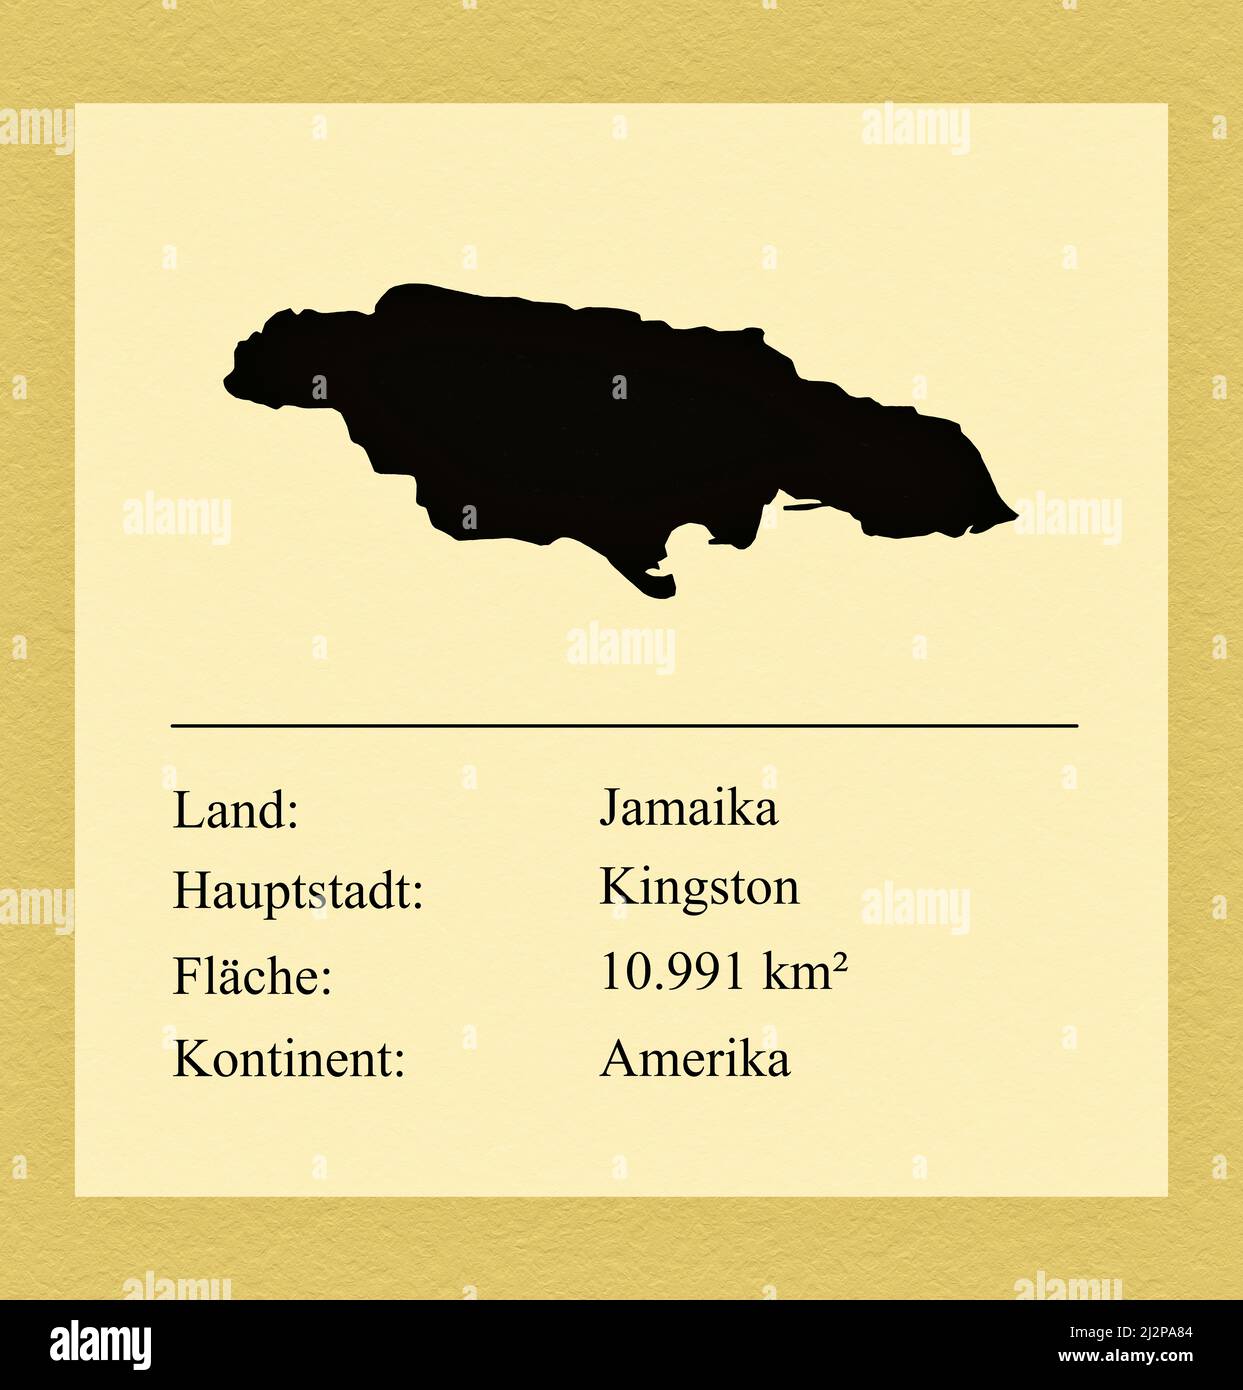 Umrisse des Landes Jamaika, darunter ein kleiner Steckbrief mit Ländernamen, Hauptstadt, Fläche und Kontinent Foto de stock